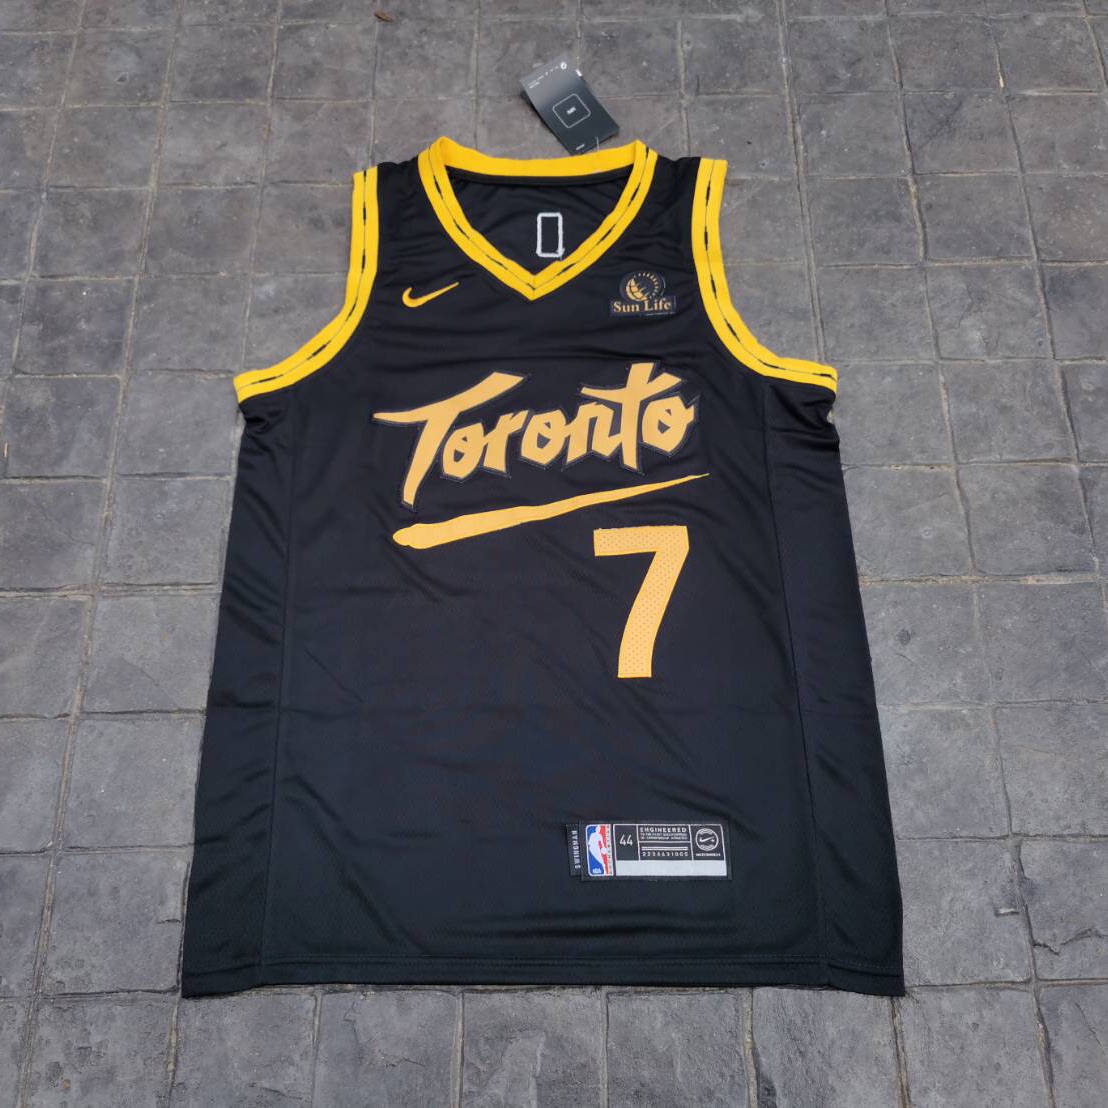 เสื้อบาสเกตบอล basketball jerseys(พร้อมจัดส่ง)#Toronto.New city edition 7 Lowry.